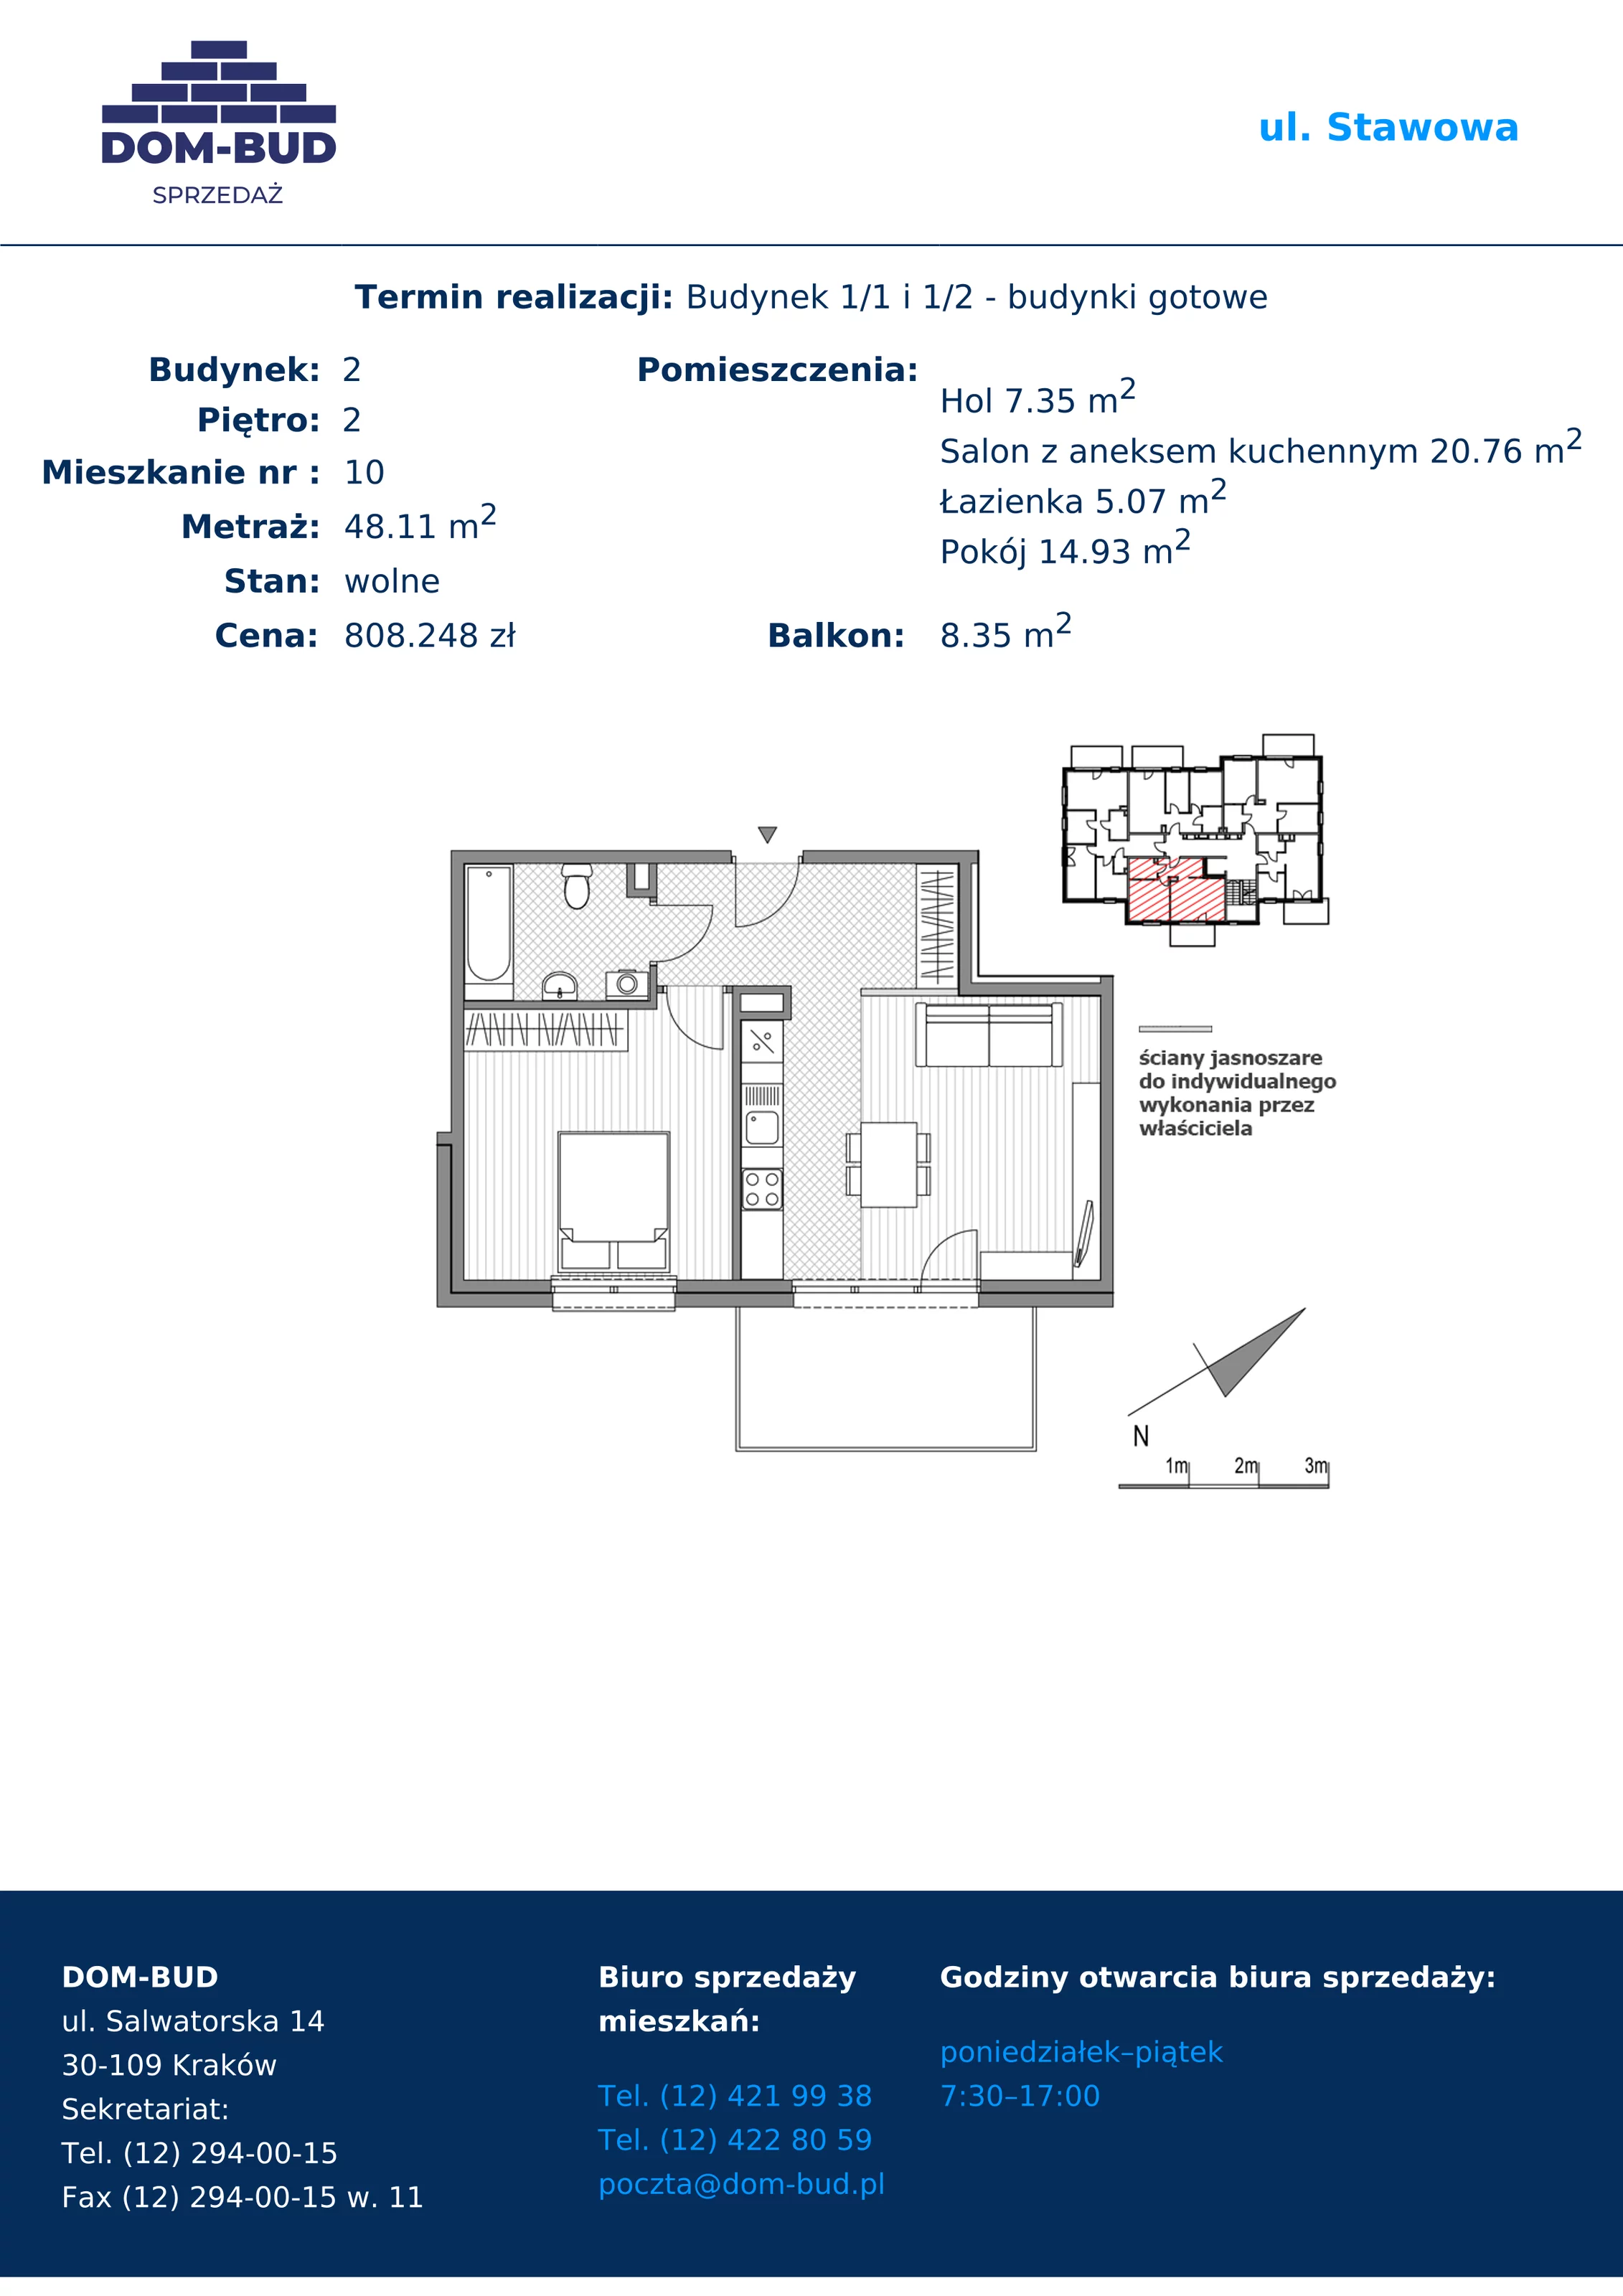 Mieszkanie 48,11 m², piętro 2, oferta nr 1/2-10, ul. Stawowa, Kraków, Prądnik Biały, Bronowice Wielkie, ul. Stawowa 242